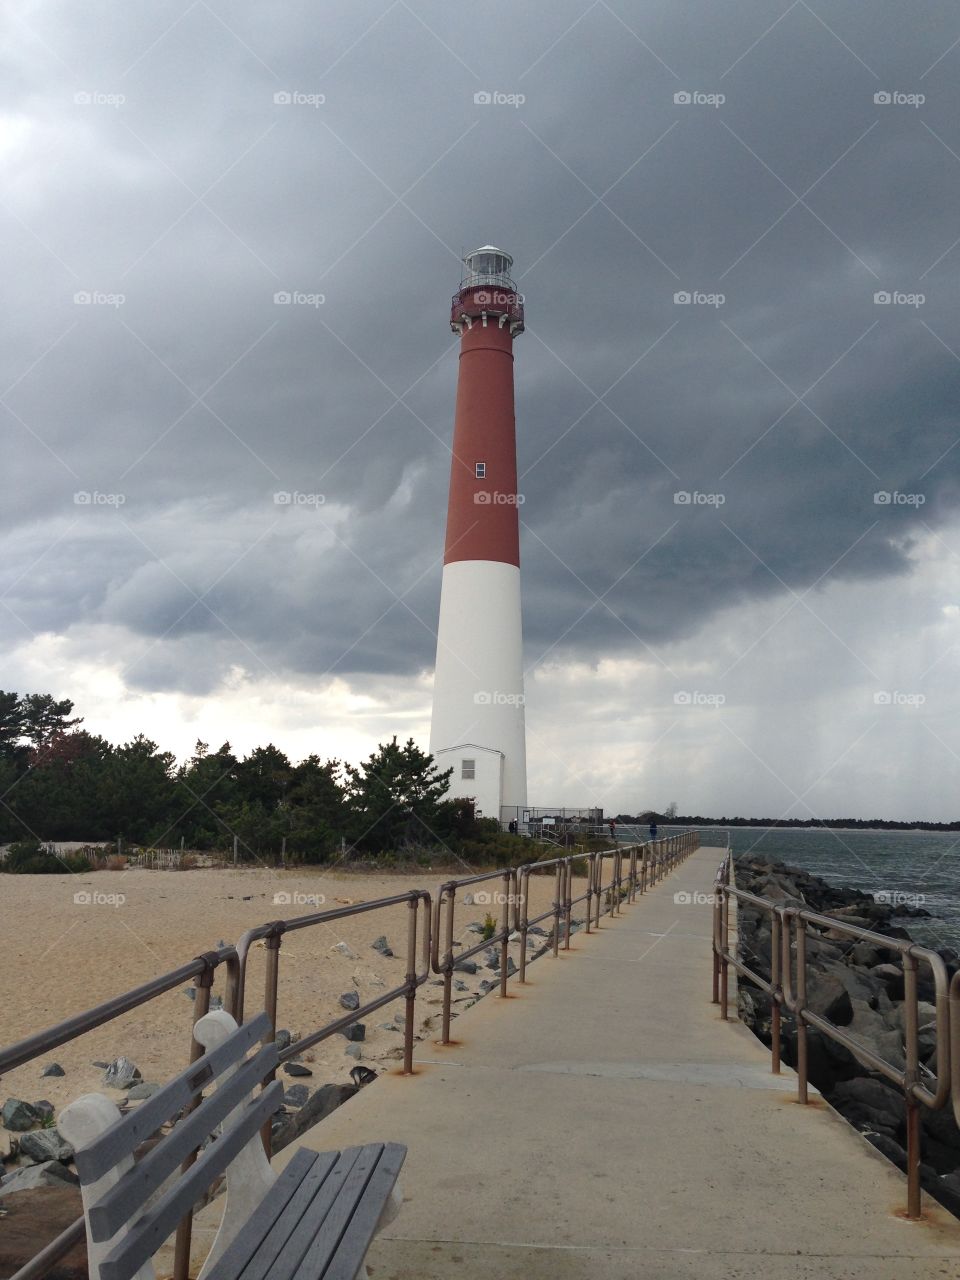 Barnegat Bay Lighthouse, New Jersey